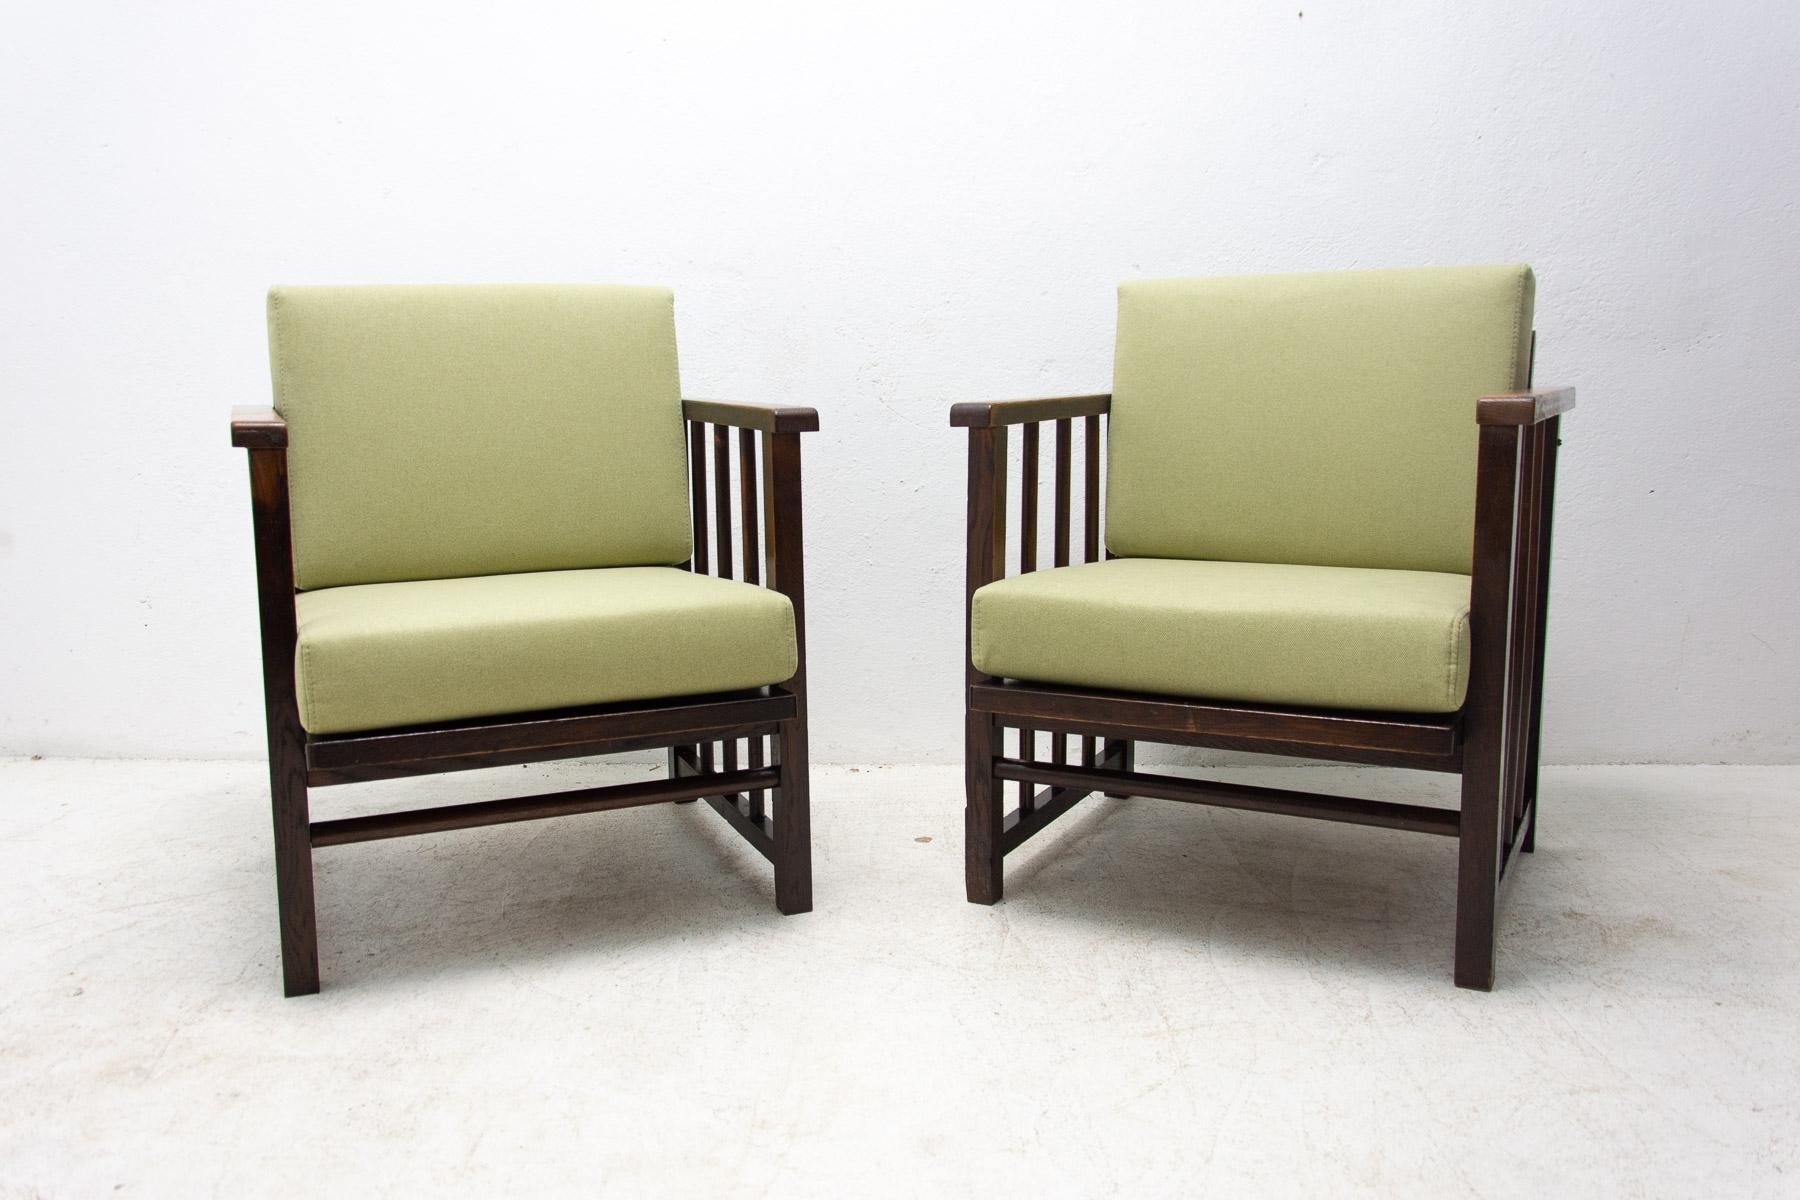 Ces fauteuils ART DECO en bois courbé ont été conçus par Jaroslav Grunt en coopération avec Jan Vanek(ÚP Závody) / Tchécoslovaquie, années 1920.

Fabriqué dans l'ancienne Tchécoslovaquie dans les années 1930. Fabriqué en bois de hêtre. Ils sont en